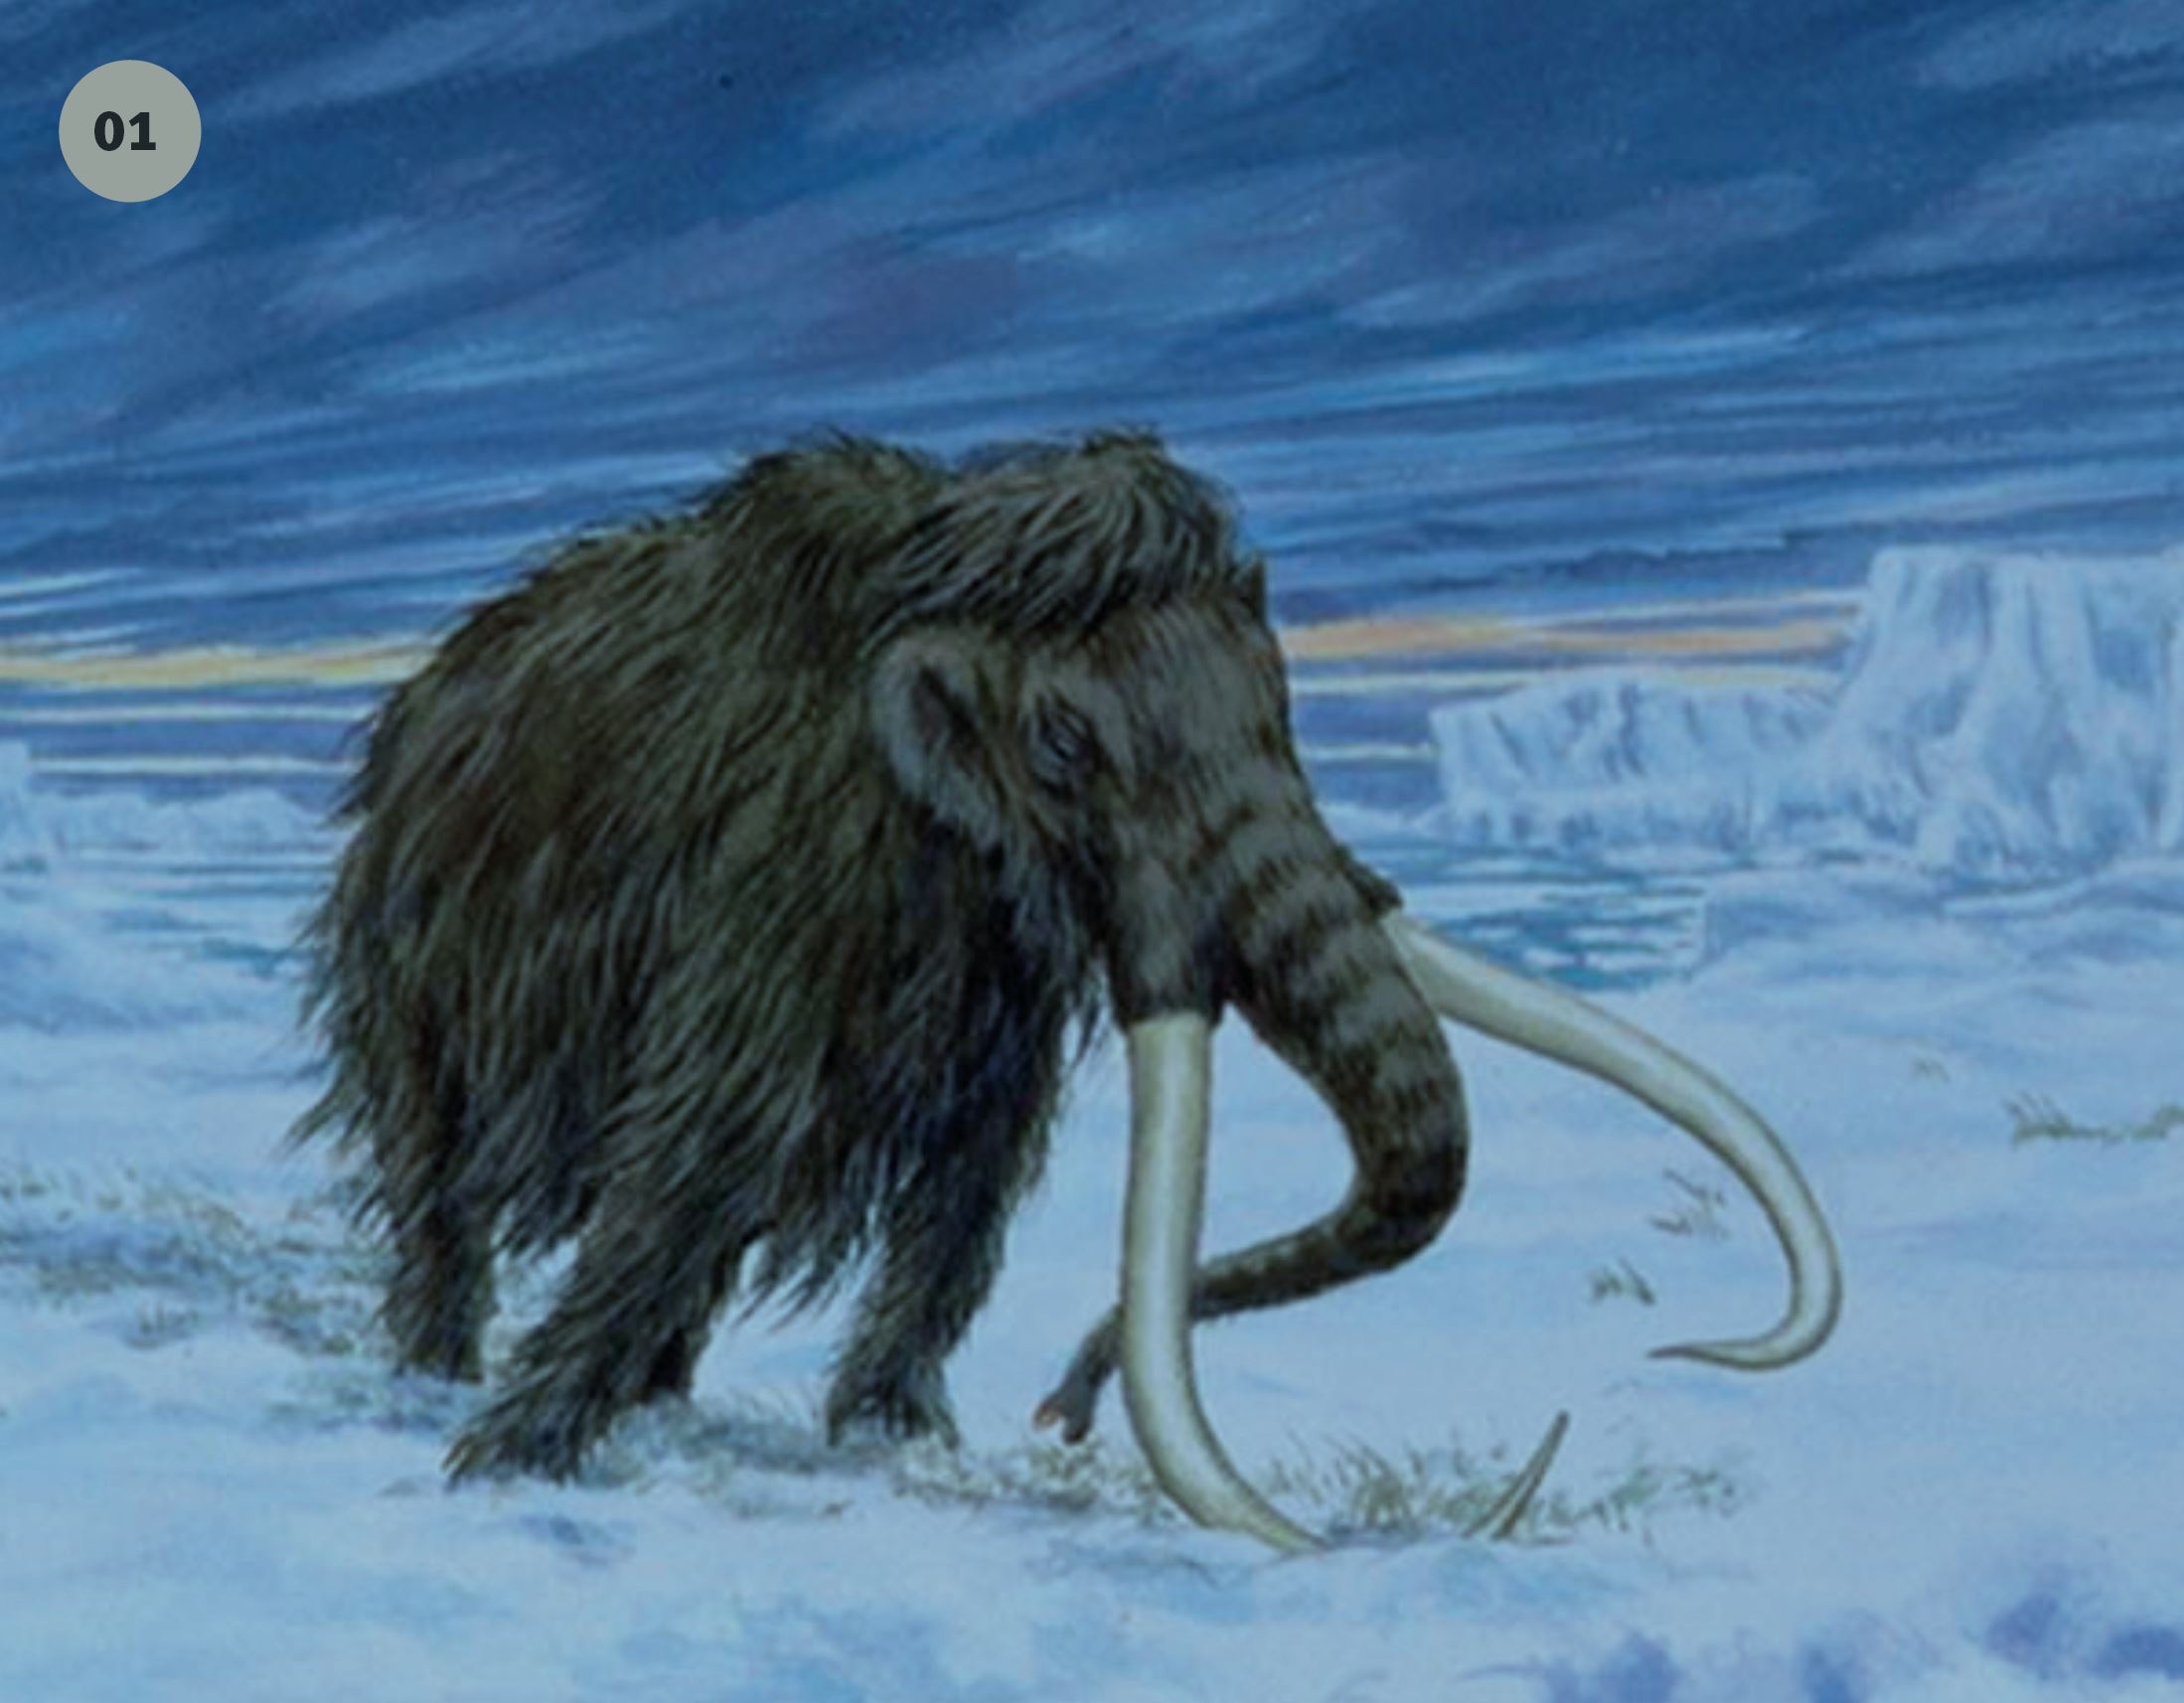 Mammuten rådde grunnen her på Grindvoll lenge
før menneskene inntok arenaen. Den var tilpasset
det kalde klimaet, men ble et offer for andre dyr og
menneskejakt da klimaet ble bedre.